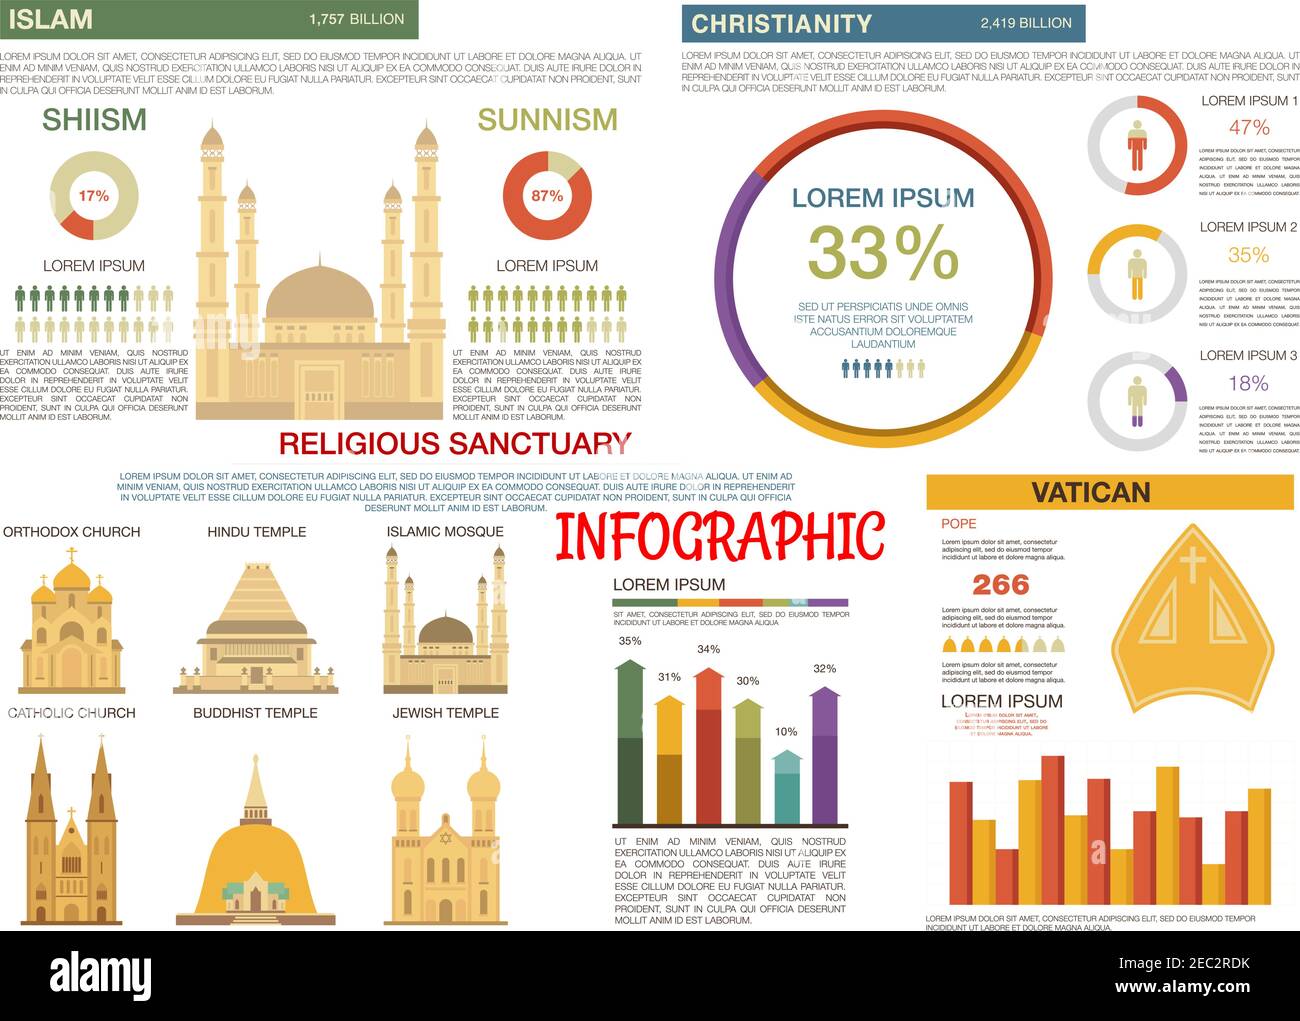 Vergleich von islam und christenheit Religionen flache Infografik mit detaillierten Informationen über schiismus und sunnismus Zweige, ergänzt mit Tortendiagrammen Stock Vektor